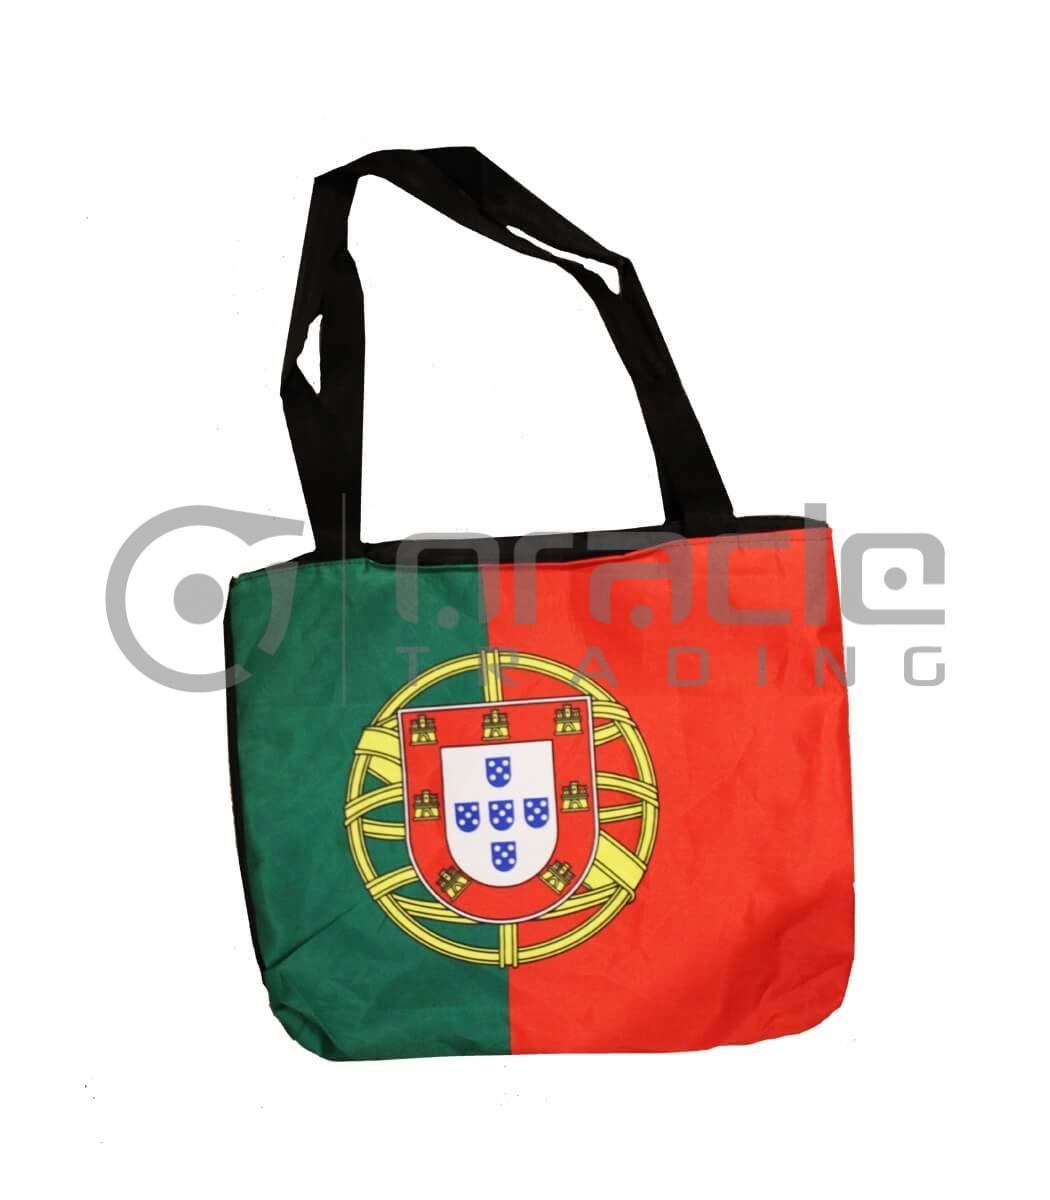 Portugal Tote Bag